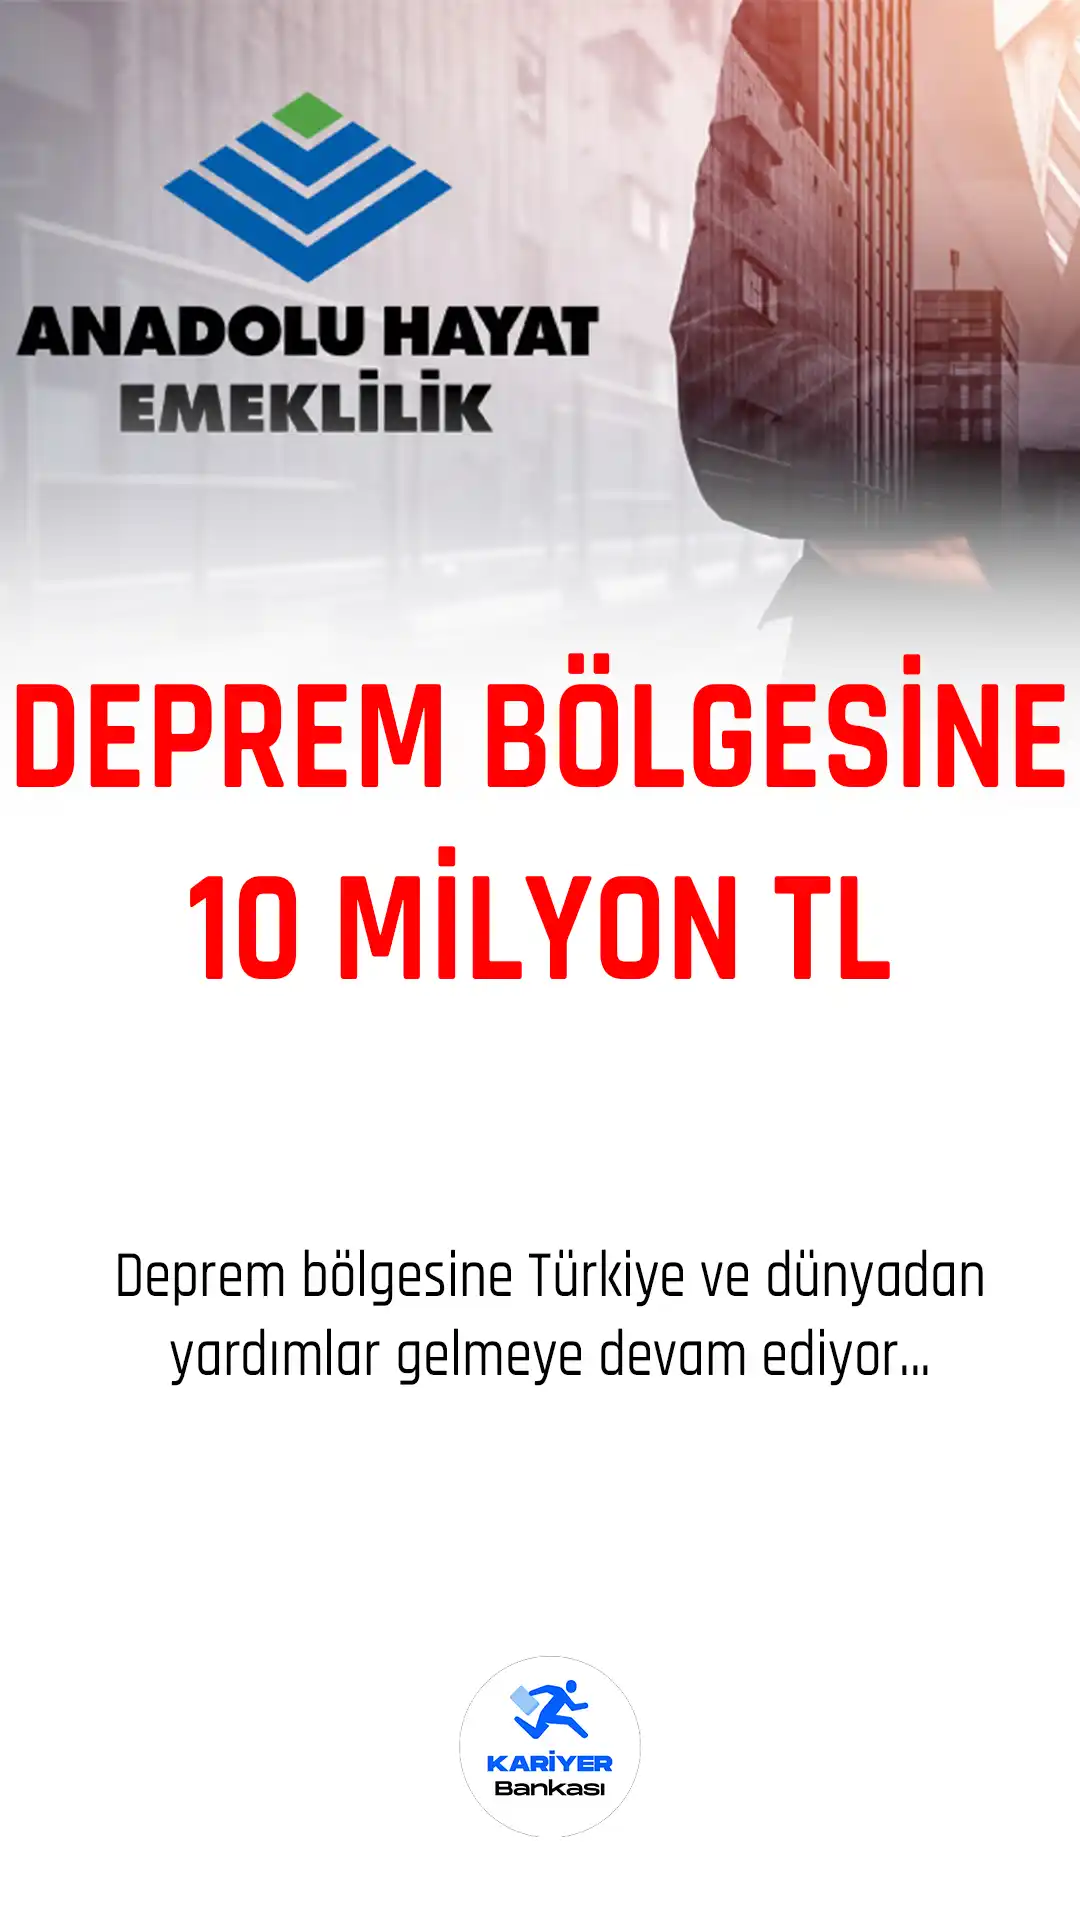 Anadolu Hayat Emeklilik deprem bölgesine 10 milyon lira bağışta bulunacak.